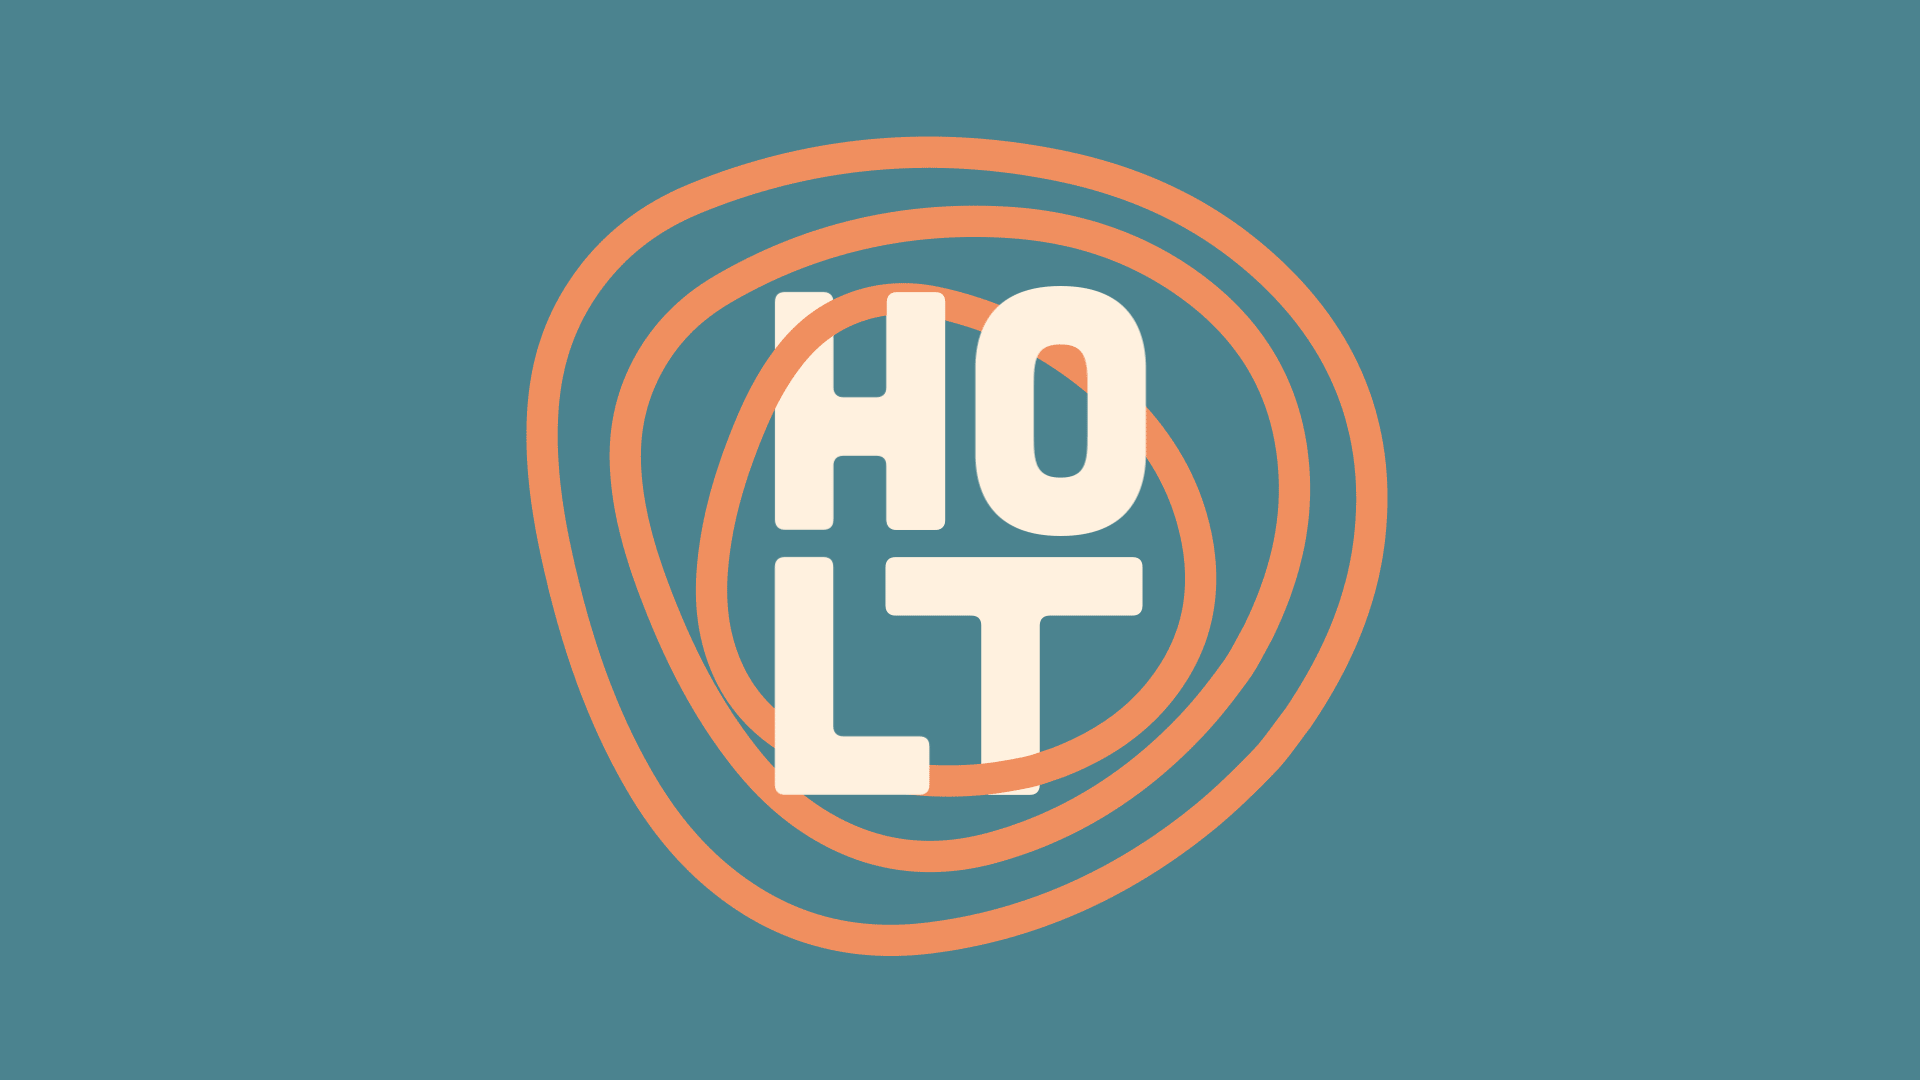 Holt - animated logo